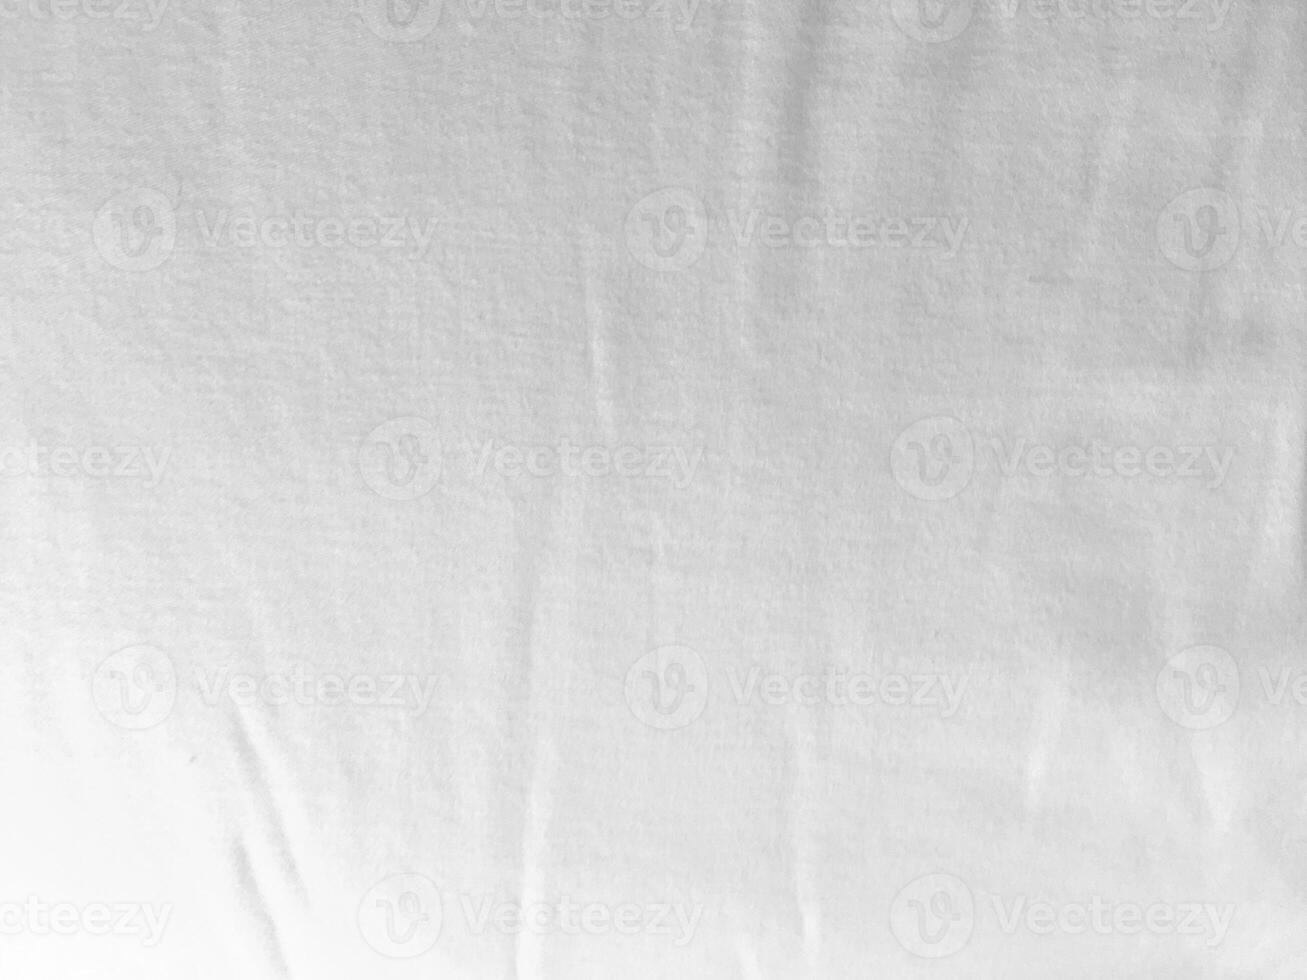 un prístino blanco tela antecedentes exhibiendo el lujoso textura de seda, creando un resumen y suave ambiente Perfecto para un gama alta diseño. foto